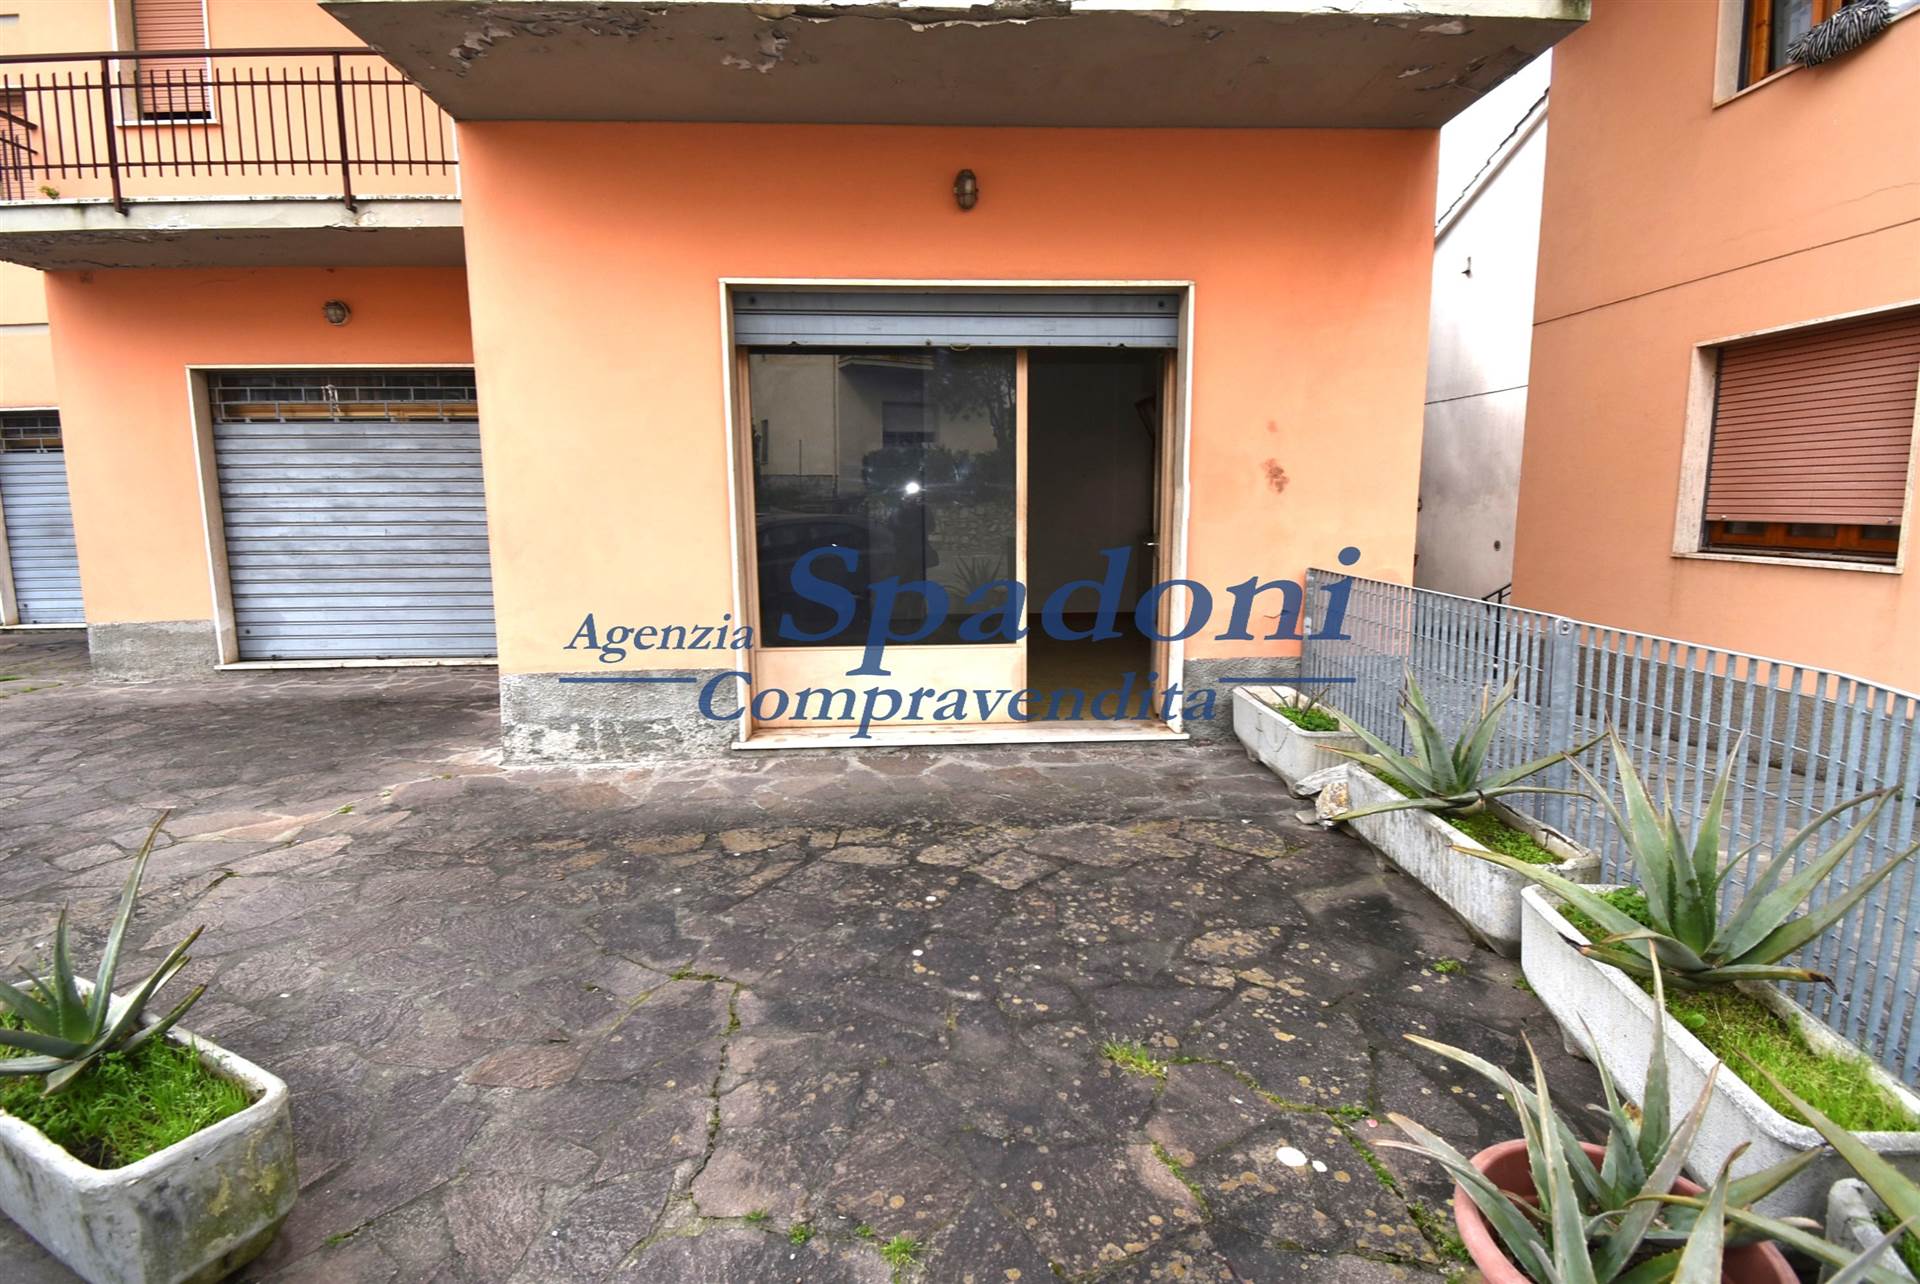 Immobile Commerciale in vendita a Monsummano Terme, 1 locali, prezzo € 30.000 | PortaleAgenzieImmobiliari.it